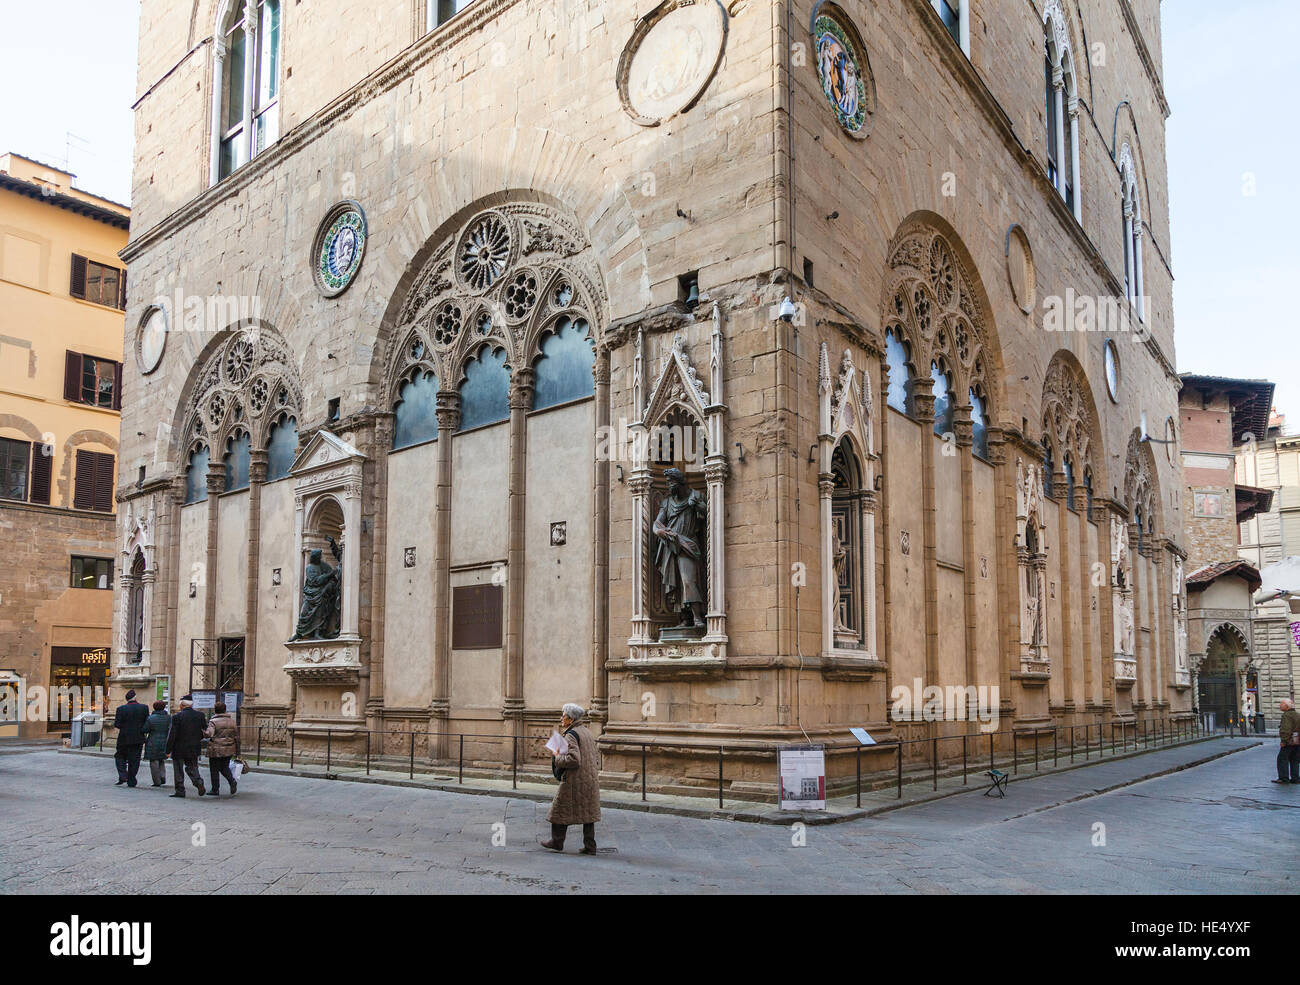 FLORENCE, ITALIE - 4 novembre, 2016 : construction de l'église Orsanmichele personnes près de Florence sur les rues de la ville. Église a été initialement construit comme un marché aux grains je Banque D'Images